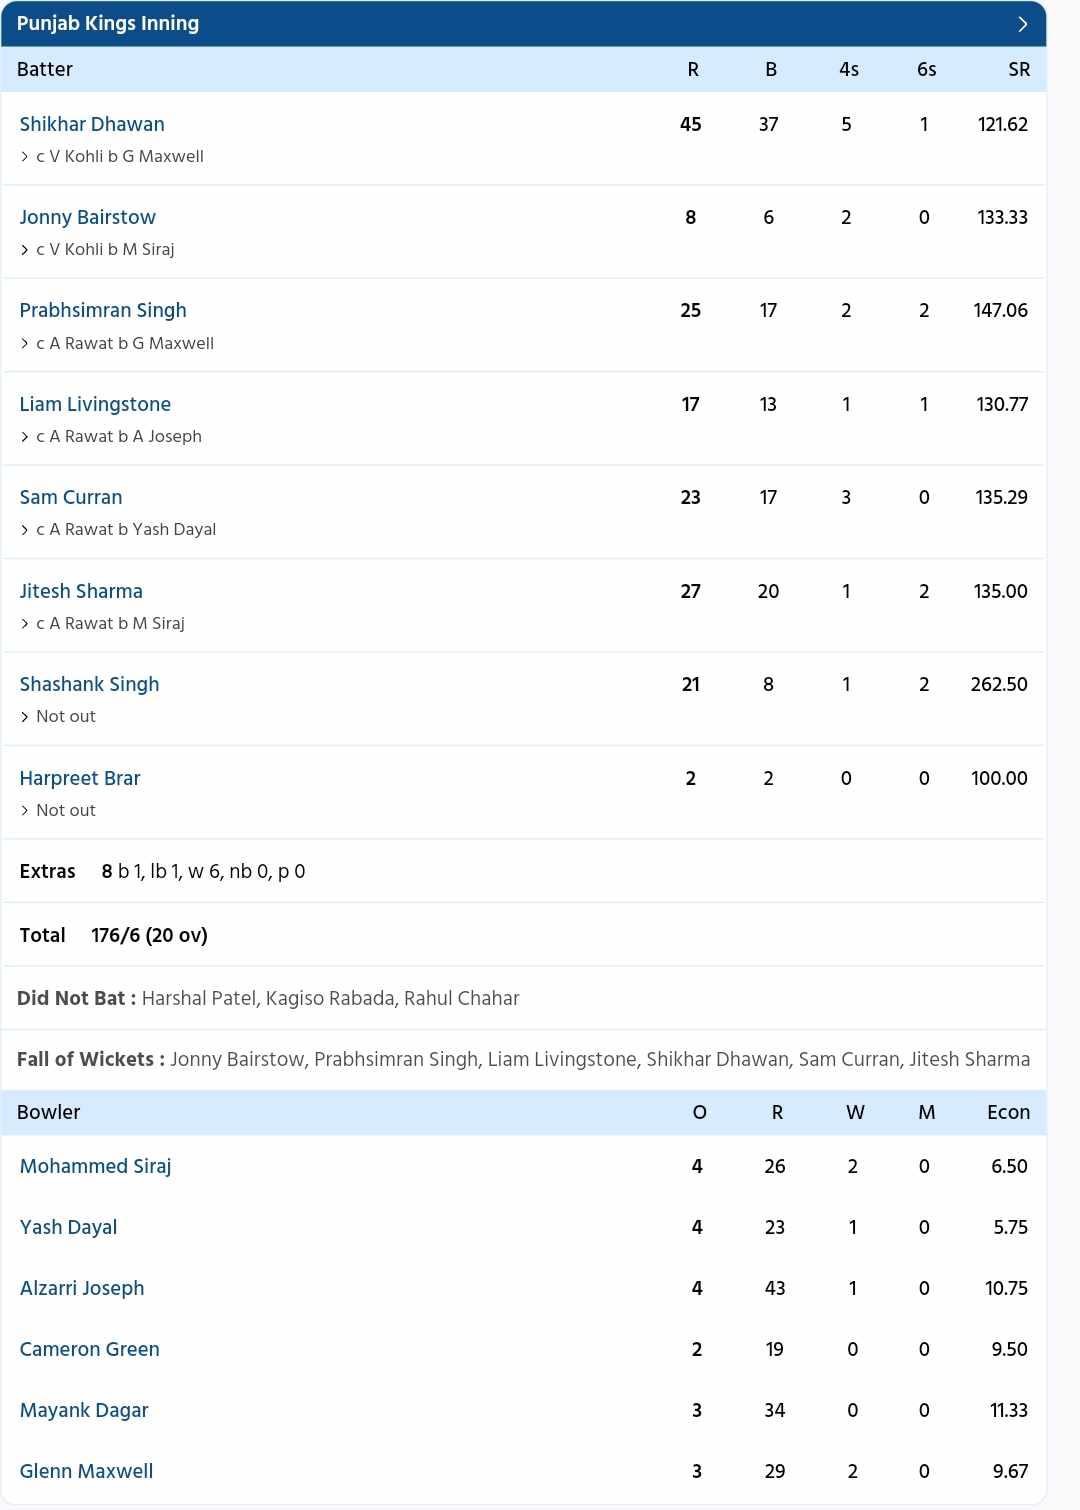 दिनेश कार्तिक ने सुनिश्चित किया कि विराट कोहली के 77 रन व्यर्थ न जाएं और आरसीबी 4 विकेट से जीत जाए